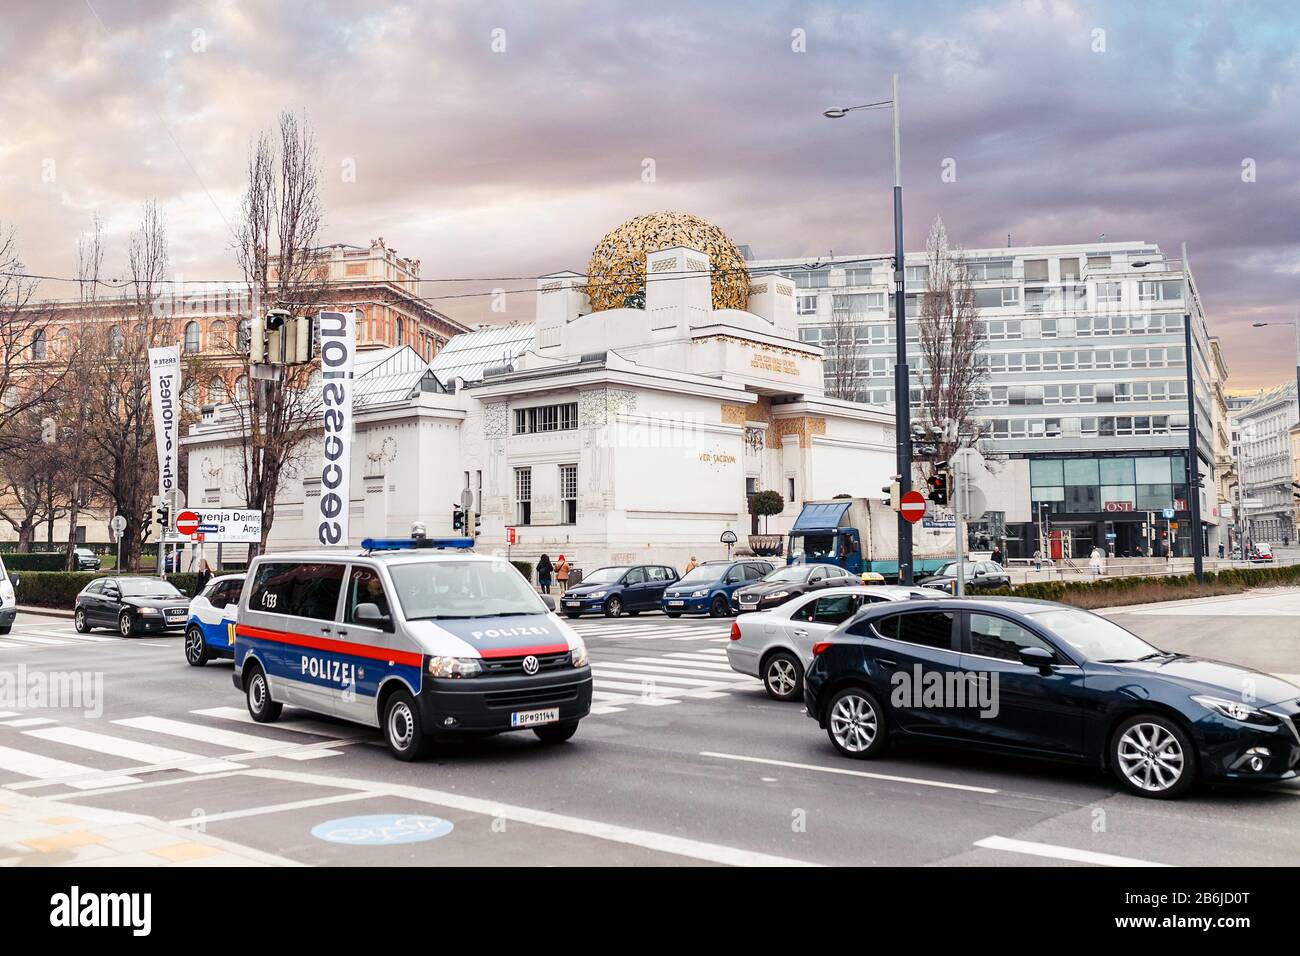 Wien, ÖSTERREICH, 23. MÄRZ 2017: Polizeiwagen Polizei patrouilliert auf den Straßen Wiens. Stockfoto